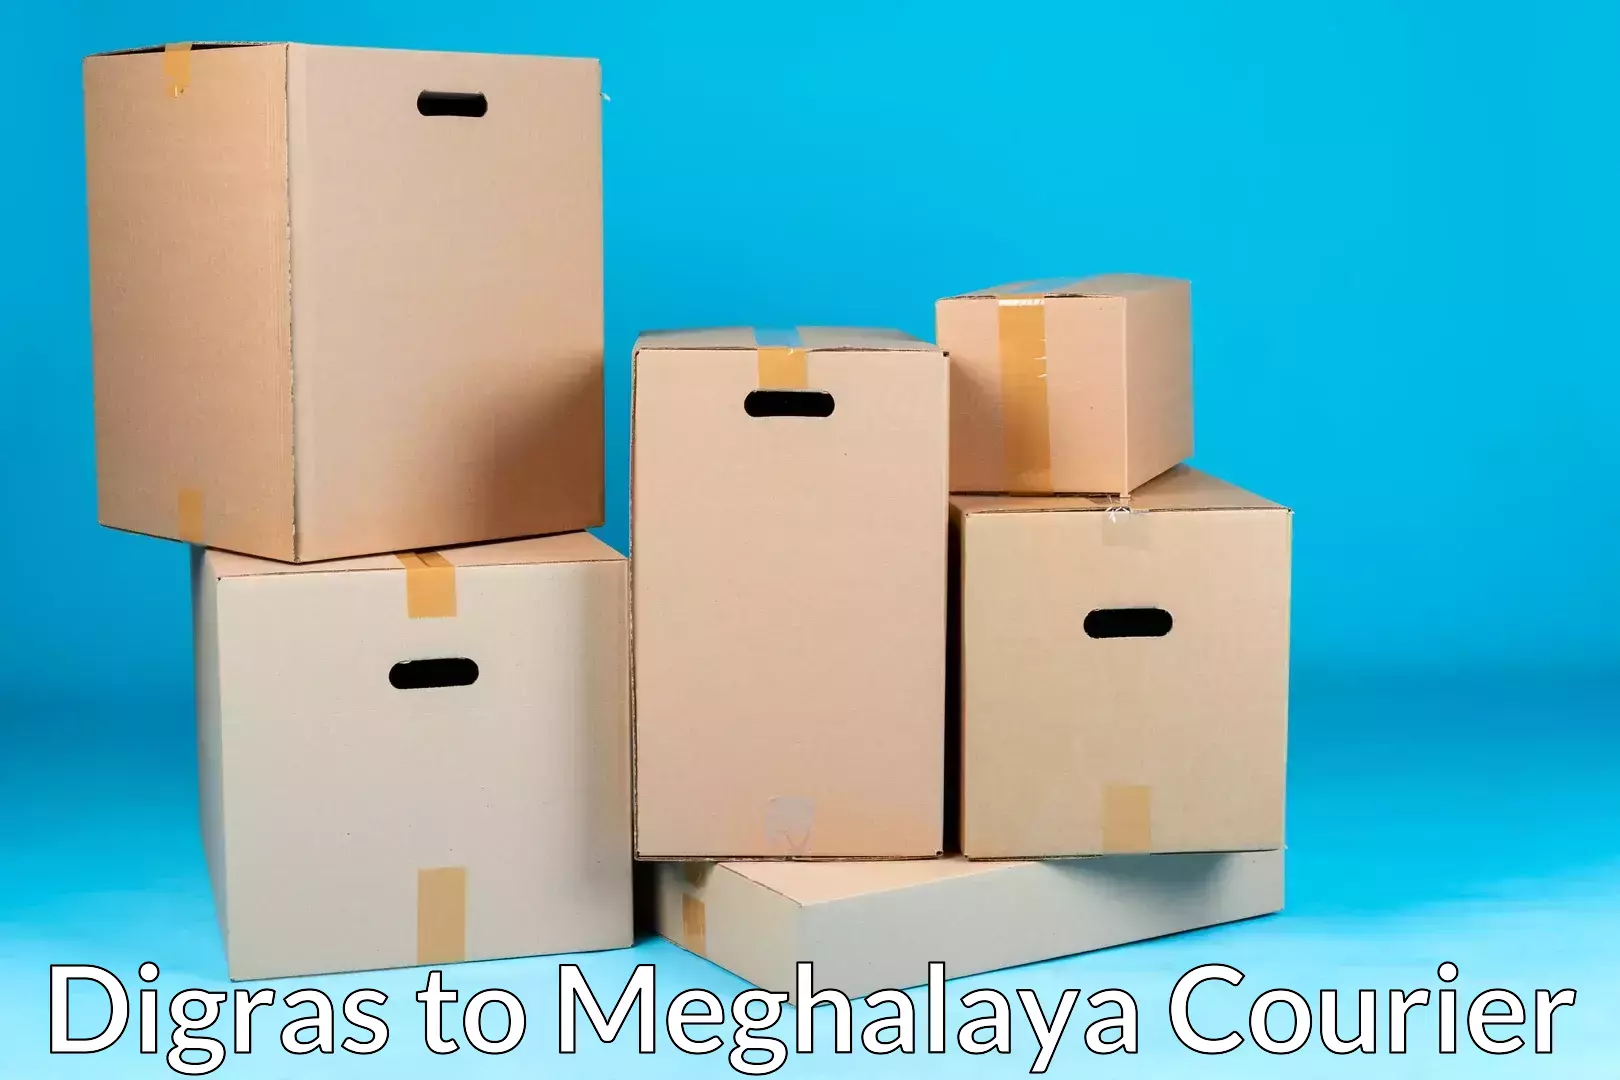 Door-to-door relocation services Digras to Meghalaya